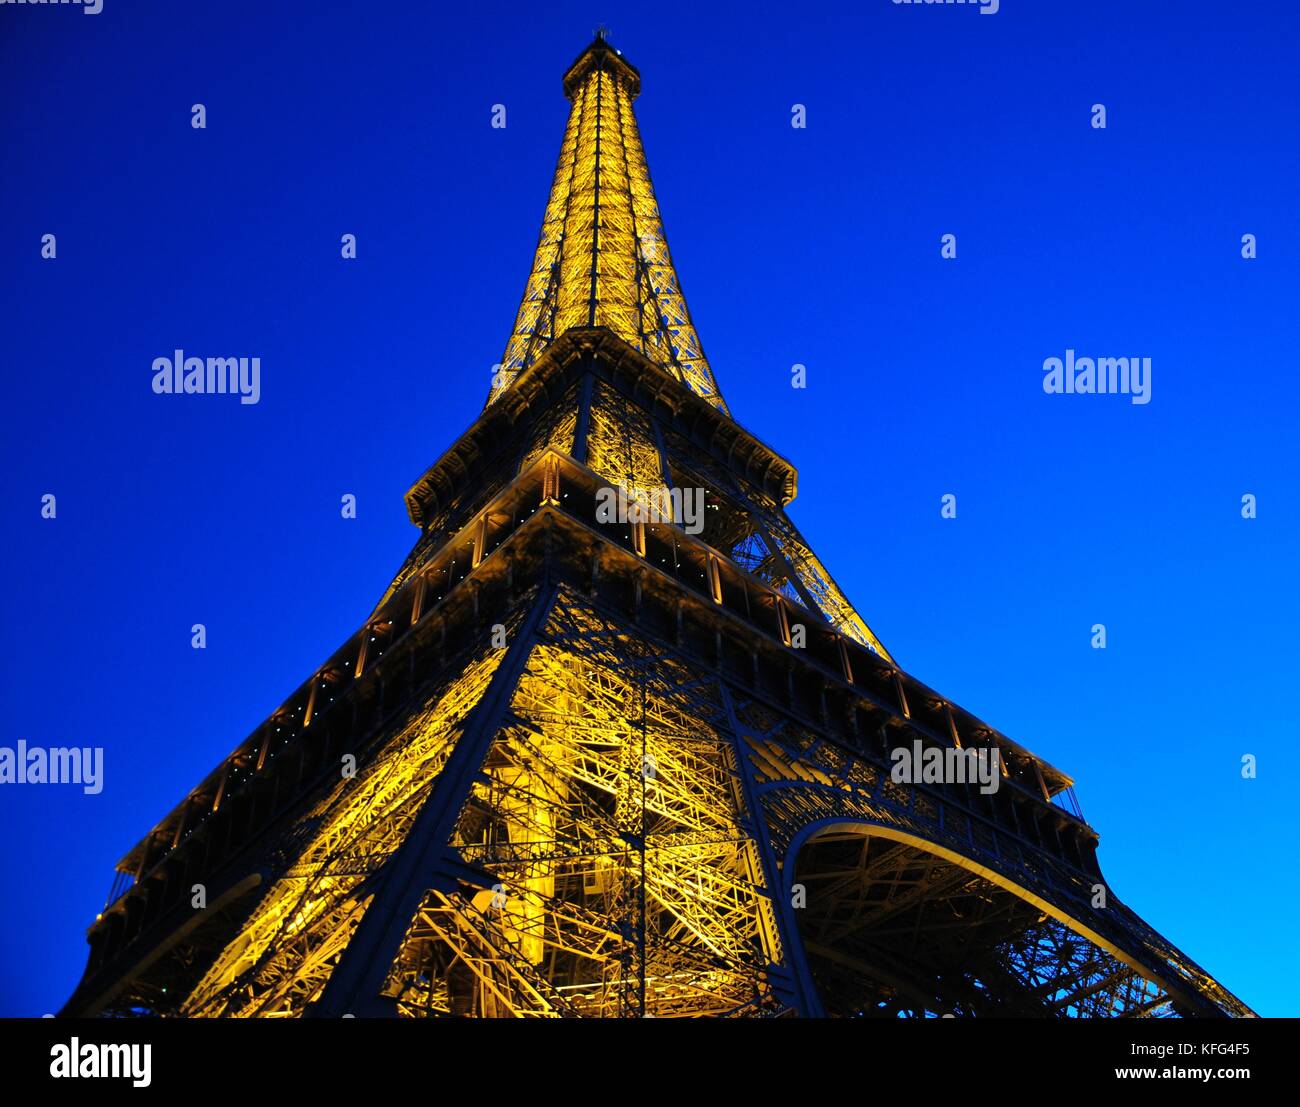 Torre Eiffel illuminata a Parigi, Francia, al tramonto. Famoso punto di riferimento artistico. Architettura Abstract Foto Stock